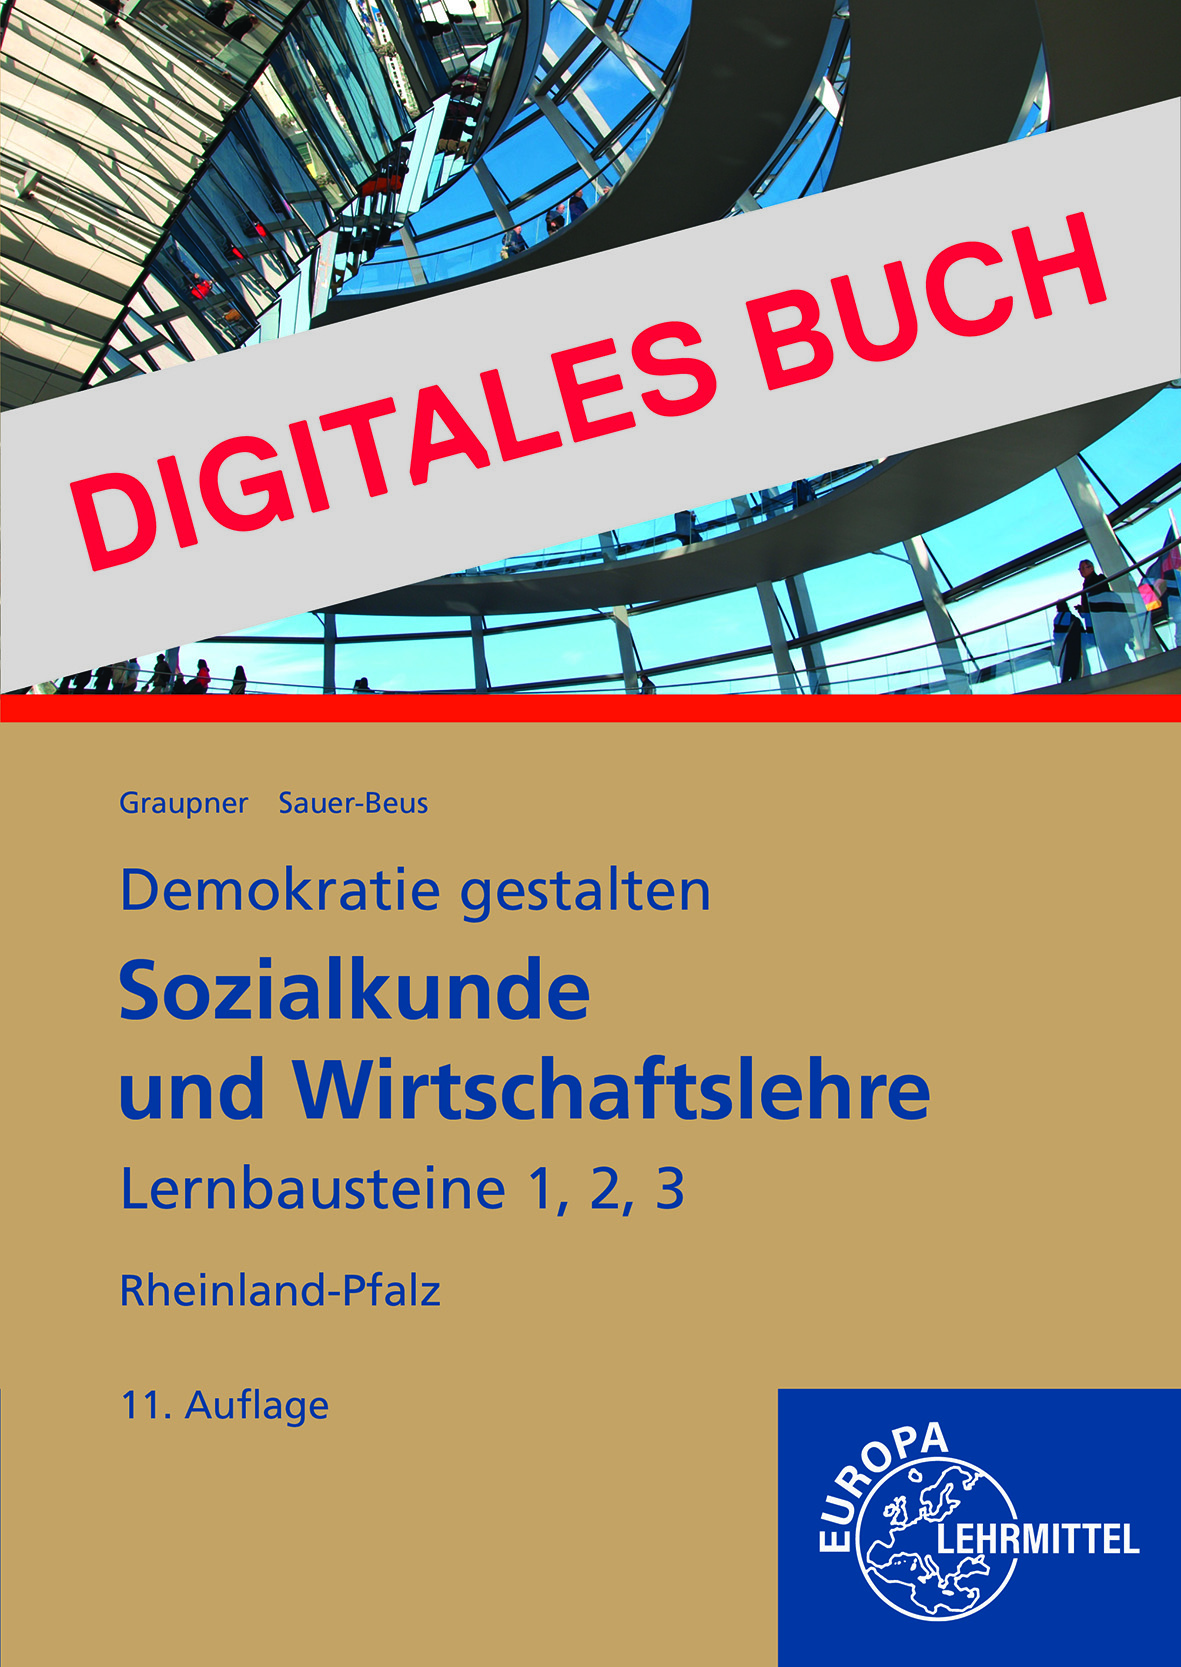 Sozialkunde und Wirtschaftslehre Lernbausteine 1, 2, 3 - Digitales Buch